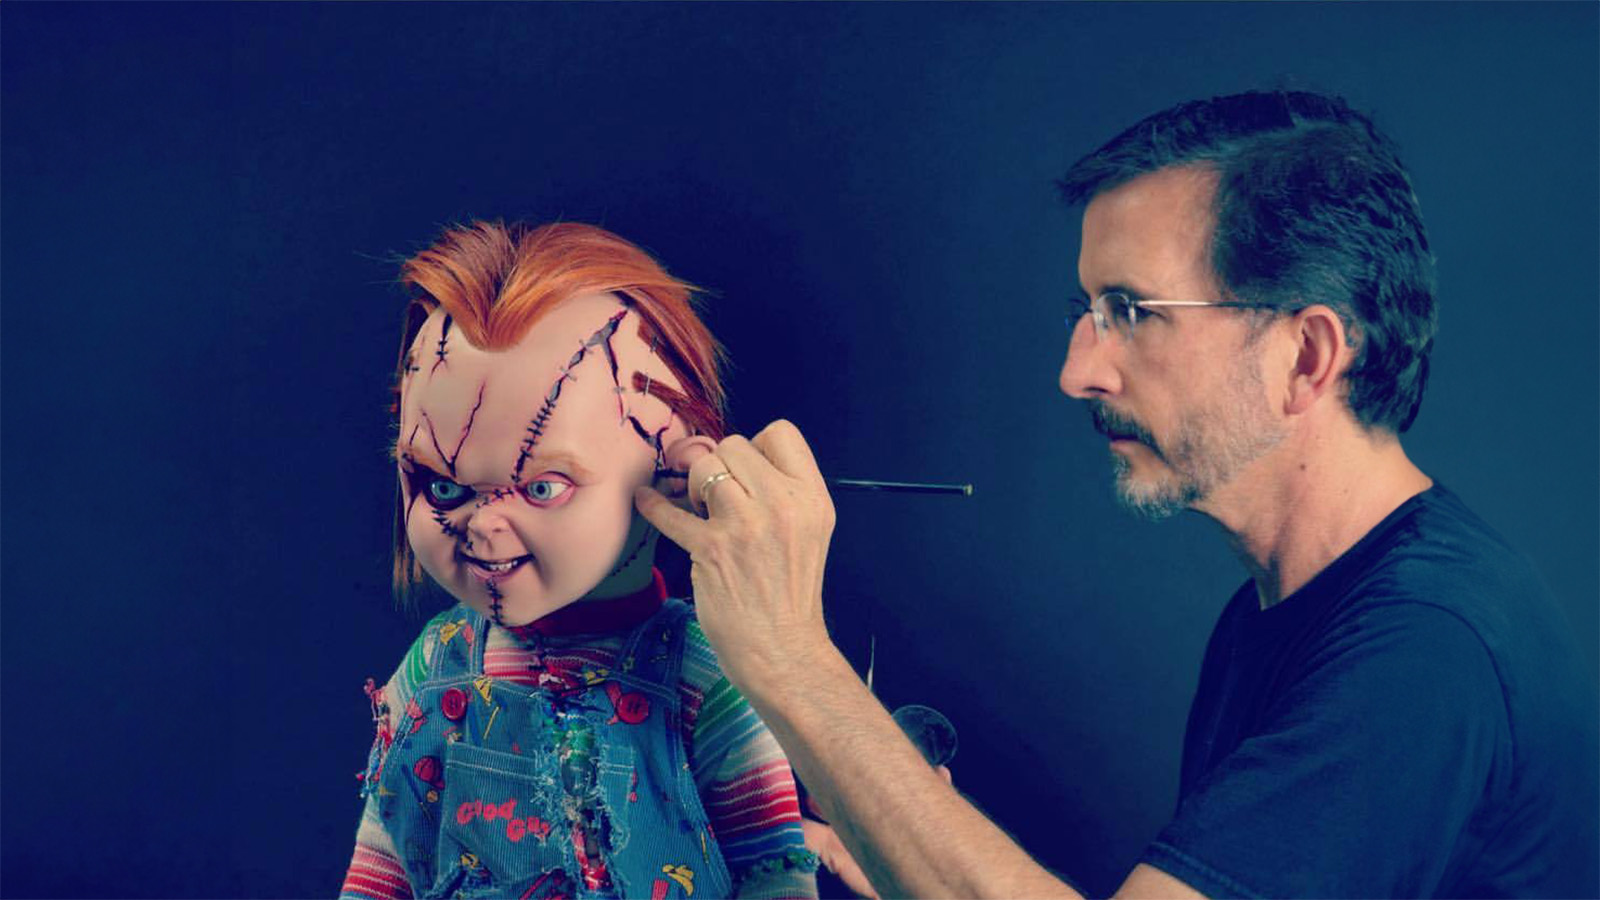 Tony Gardner and Chucky